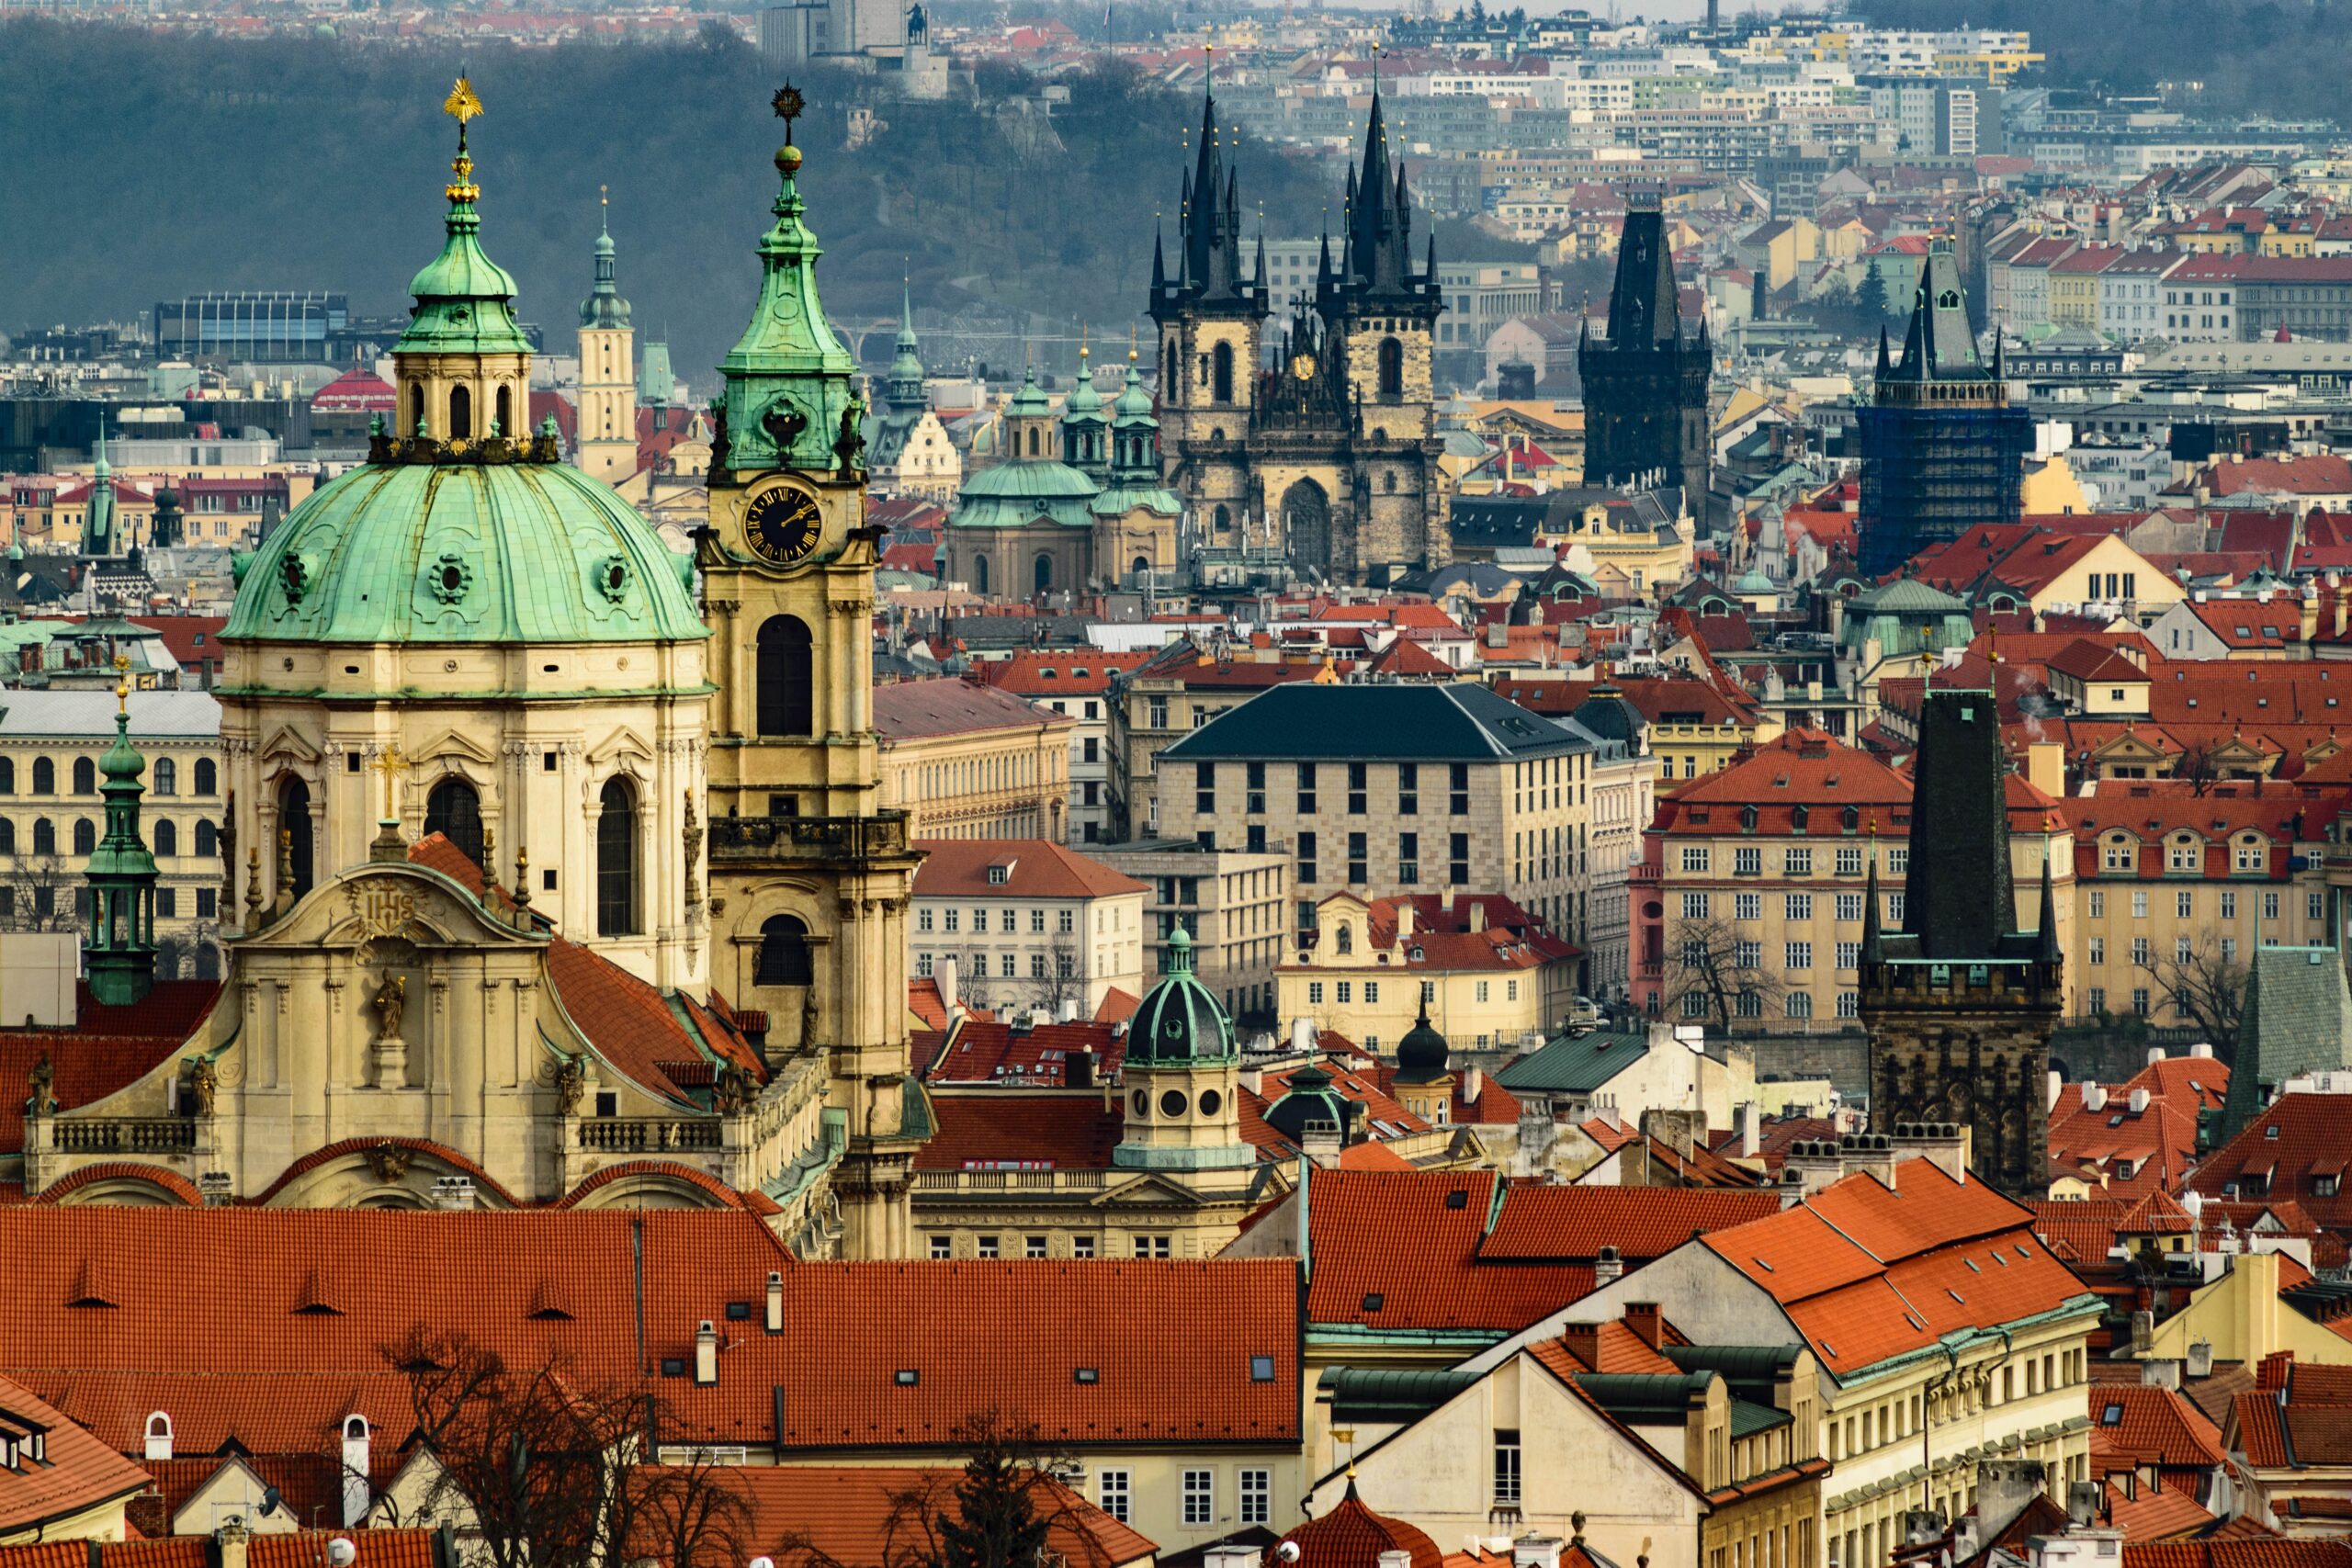 Navigare nel sistema di trasporto di Praga: consigli per spostarsi come un local